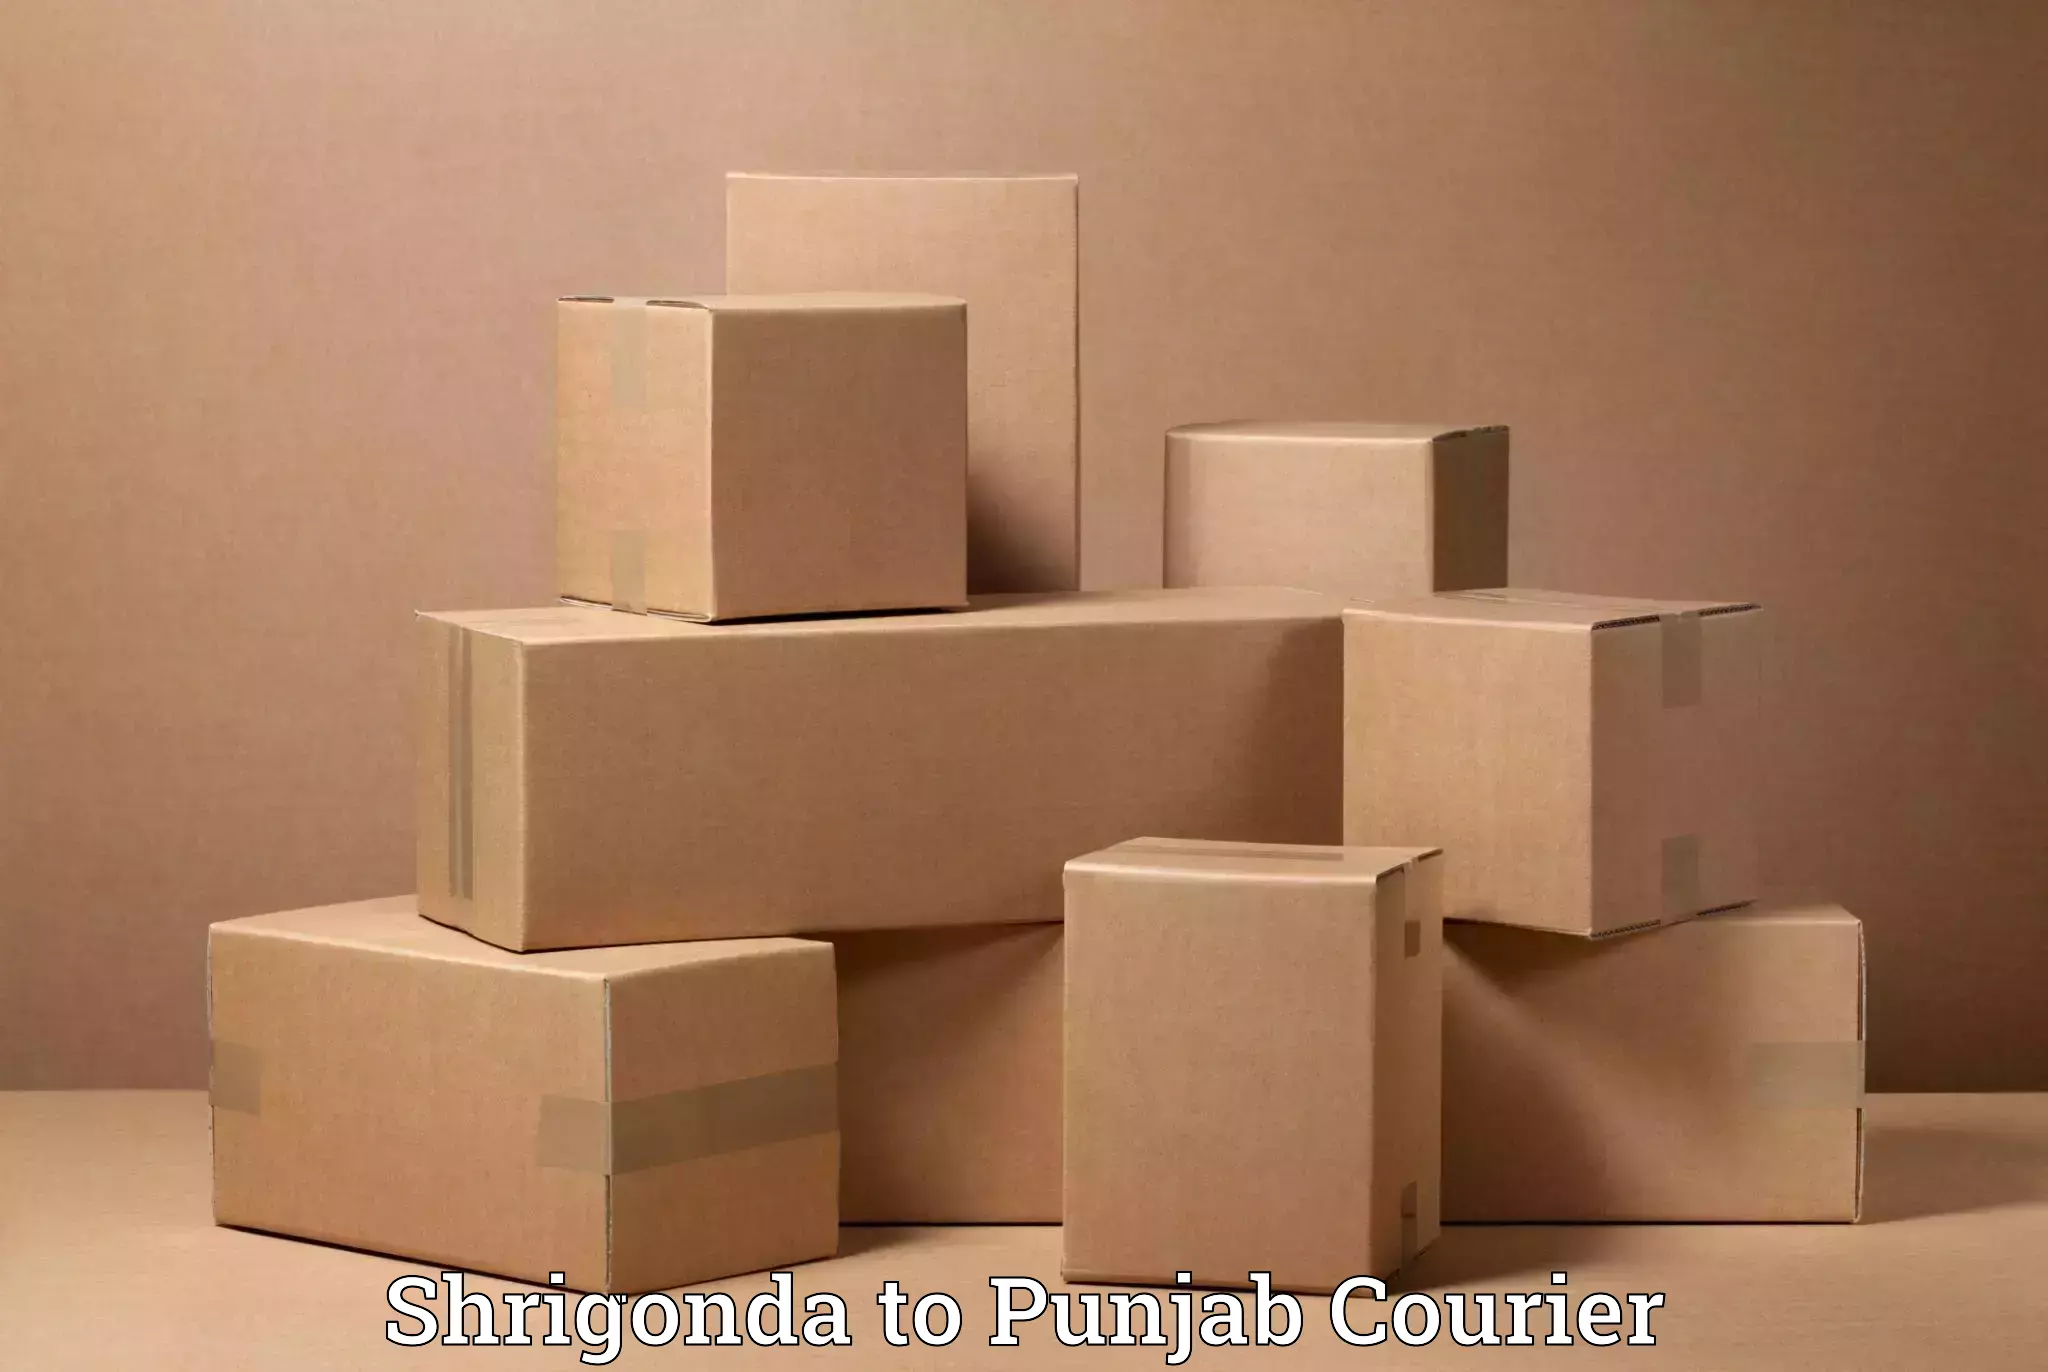 Trusted home movers Shrigonda to Rajpura